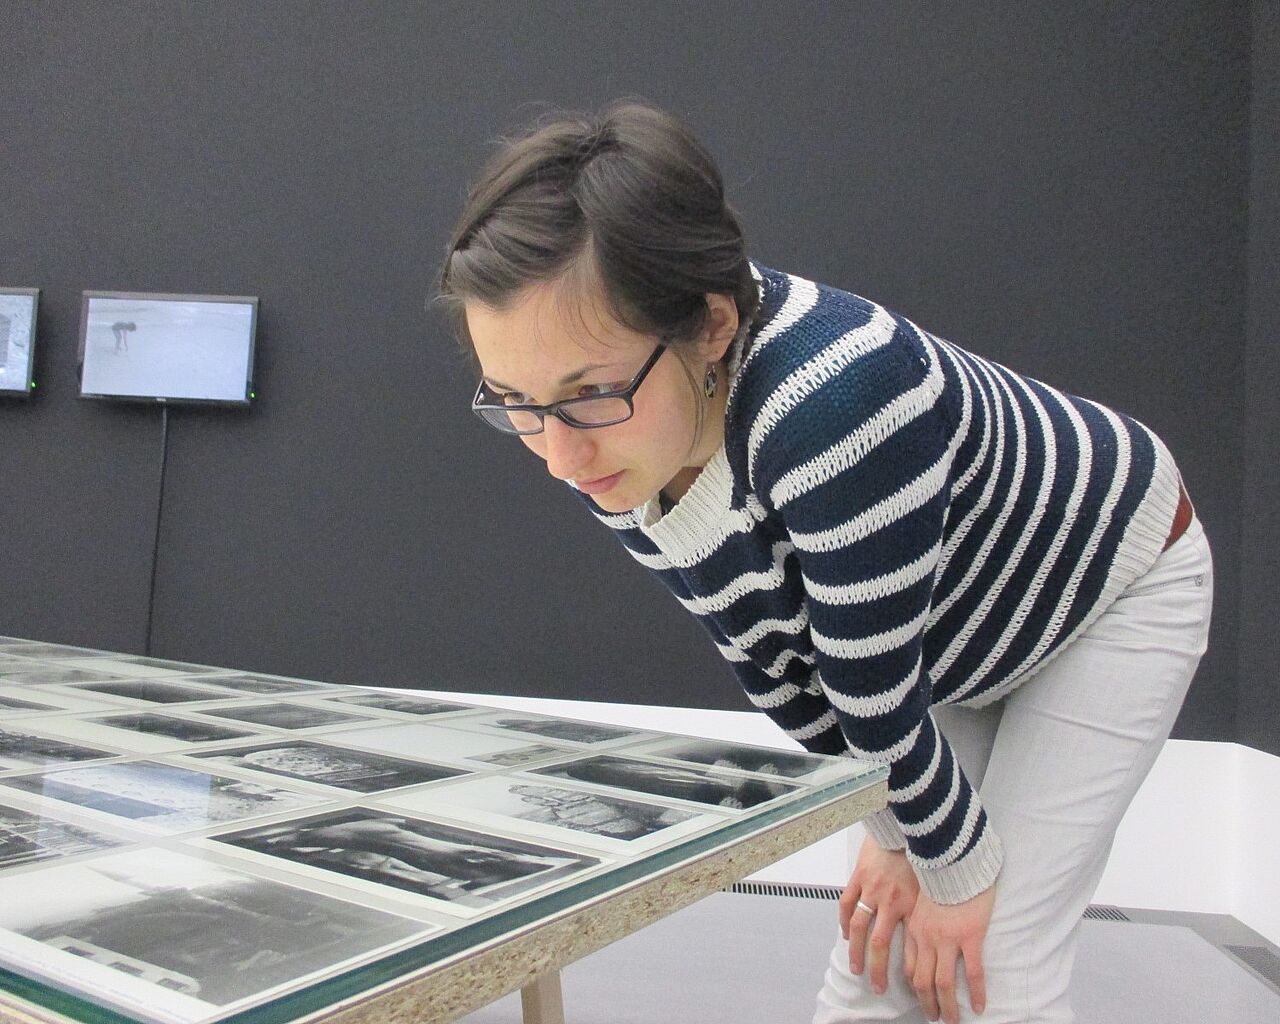 Eine Absolventin des Studiengangs Museologie an der HTWK Leipzig betrachtet Fotos, die auf einem Tisch in einer Museumsausstellung liegen.